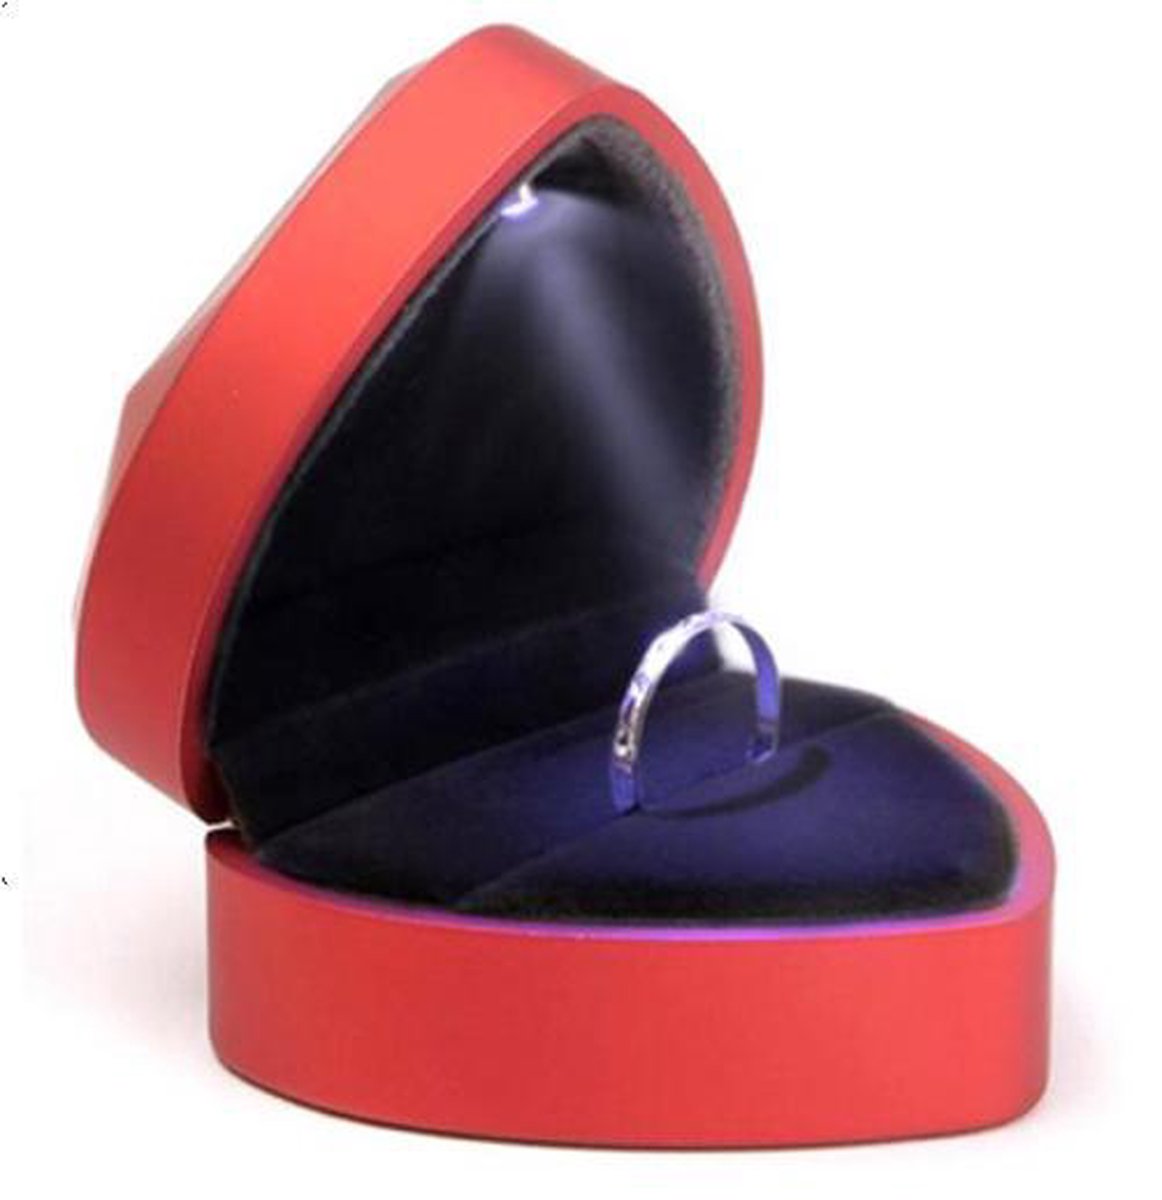 Ringdoosje hartje LED licht - aanzoek - verloving - bruiloft - huwelijksaanzoek - liefde - rood - sieradendoos - Valentijnsdag - ring - verlichting - lichtje - met licht - Merkloos